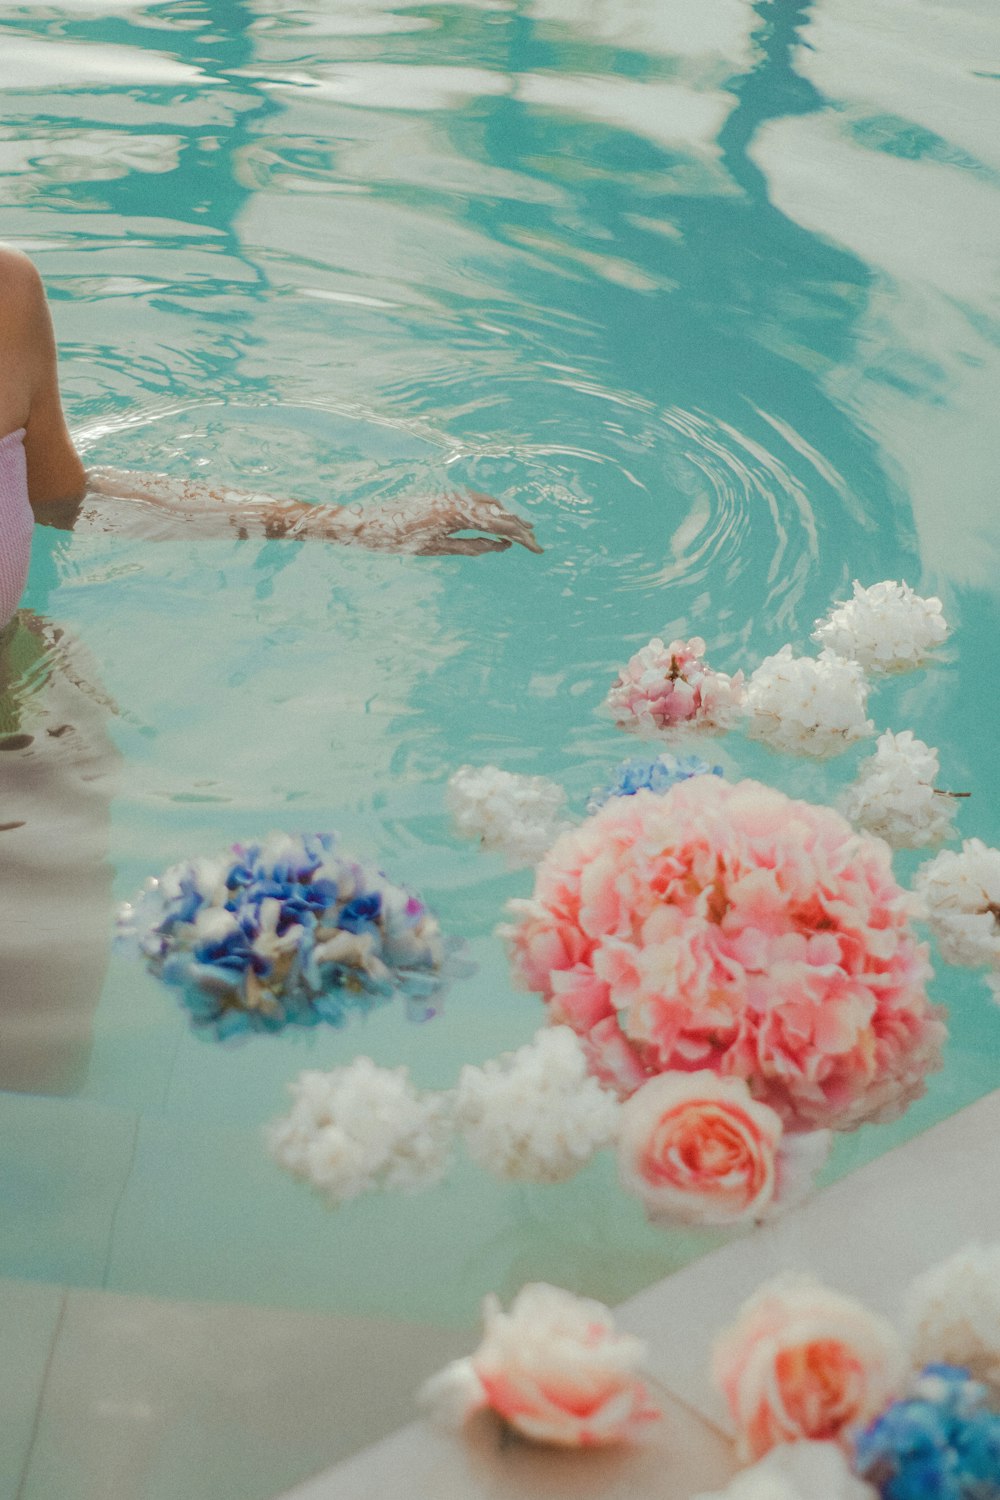 woman in blue bikini swimming on pool with pink flowers